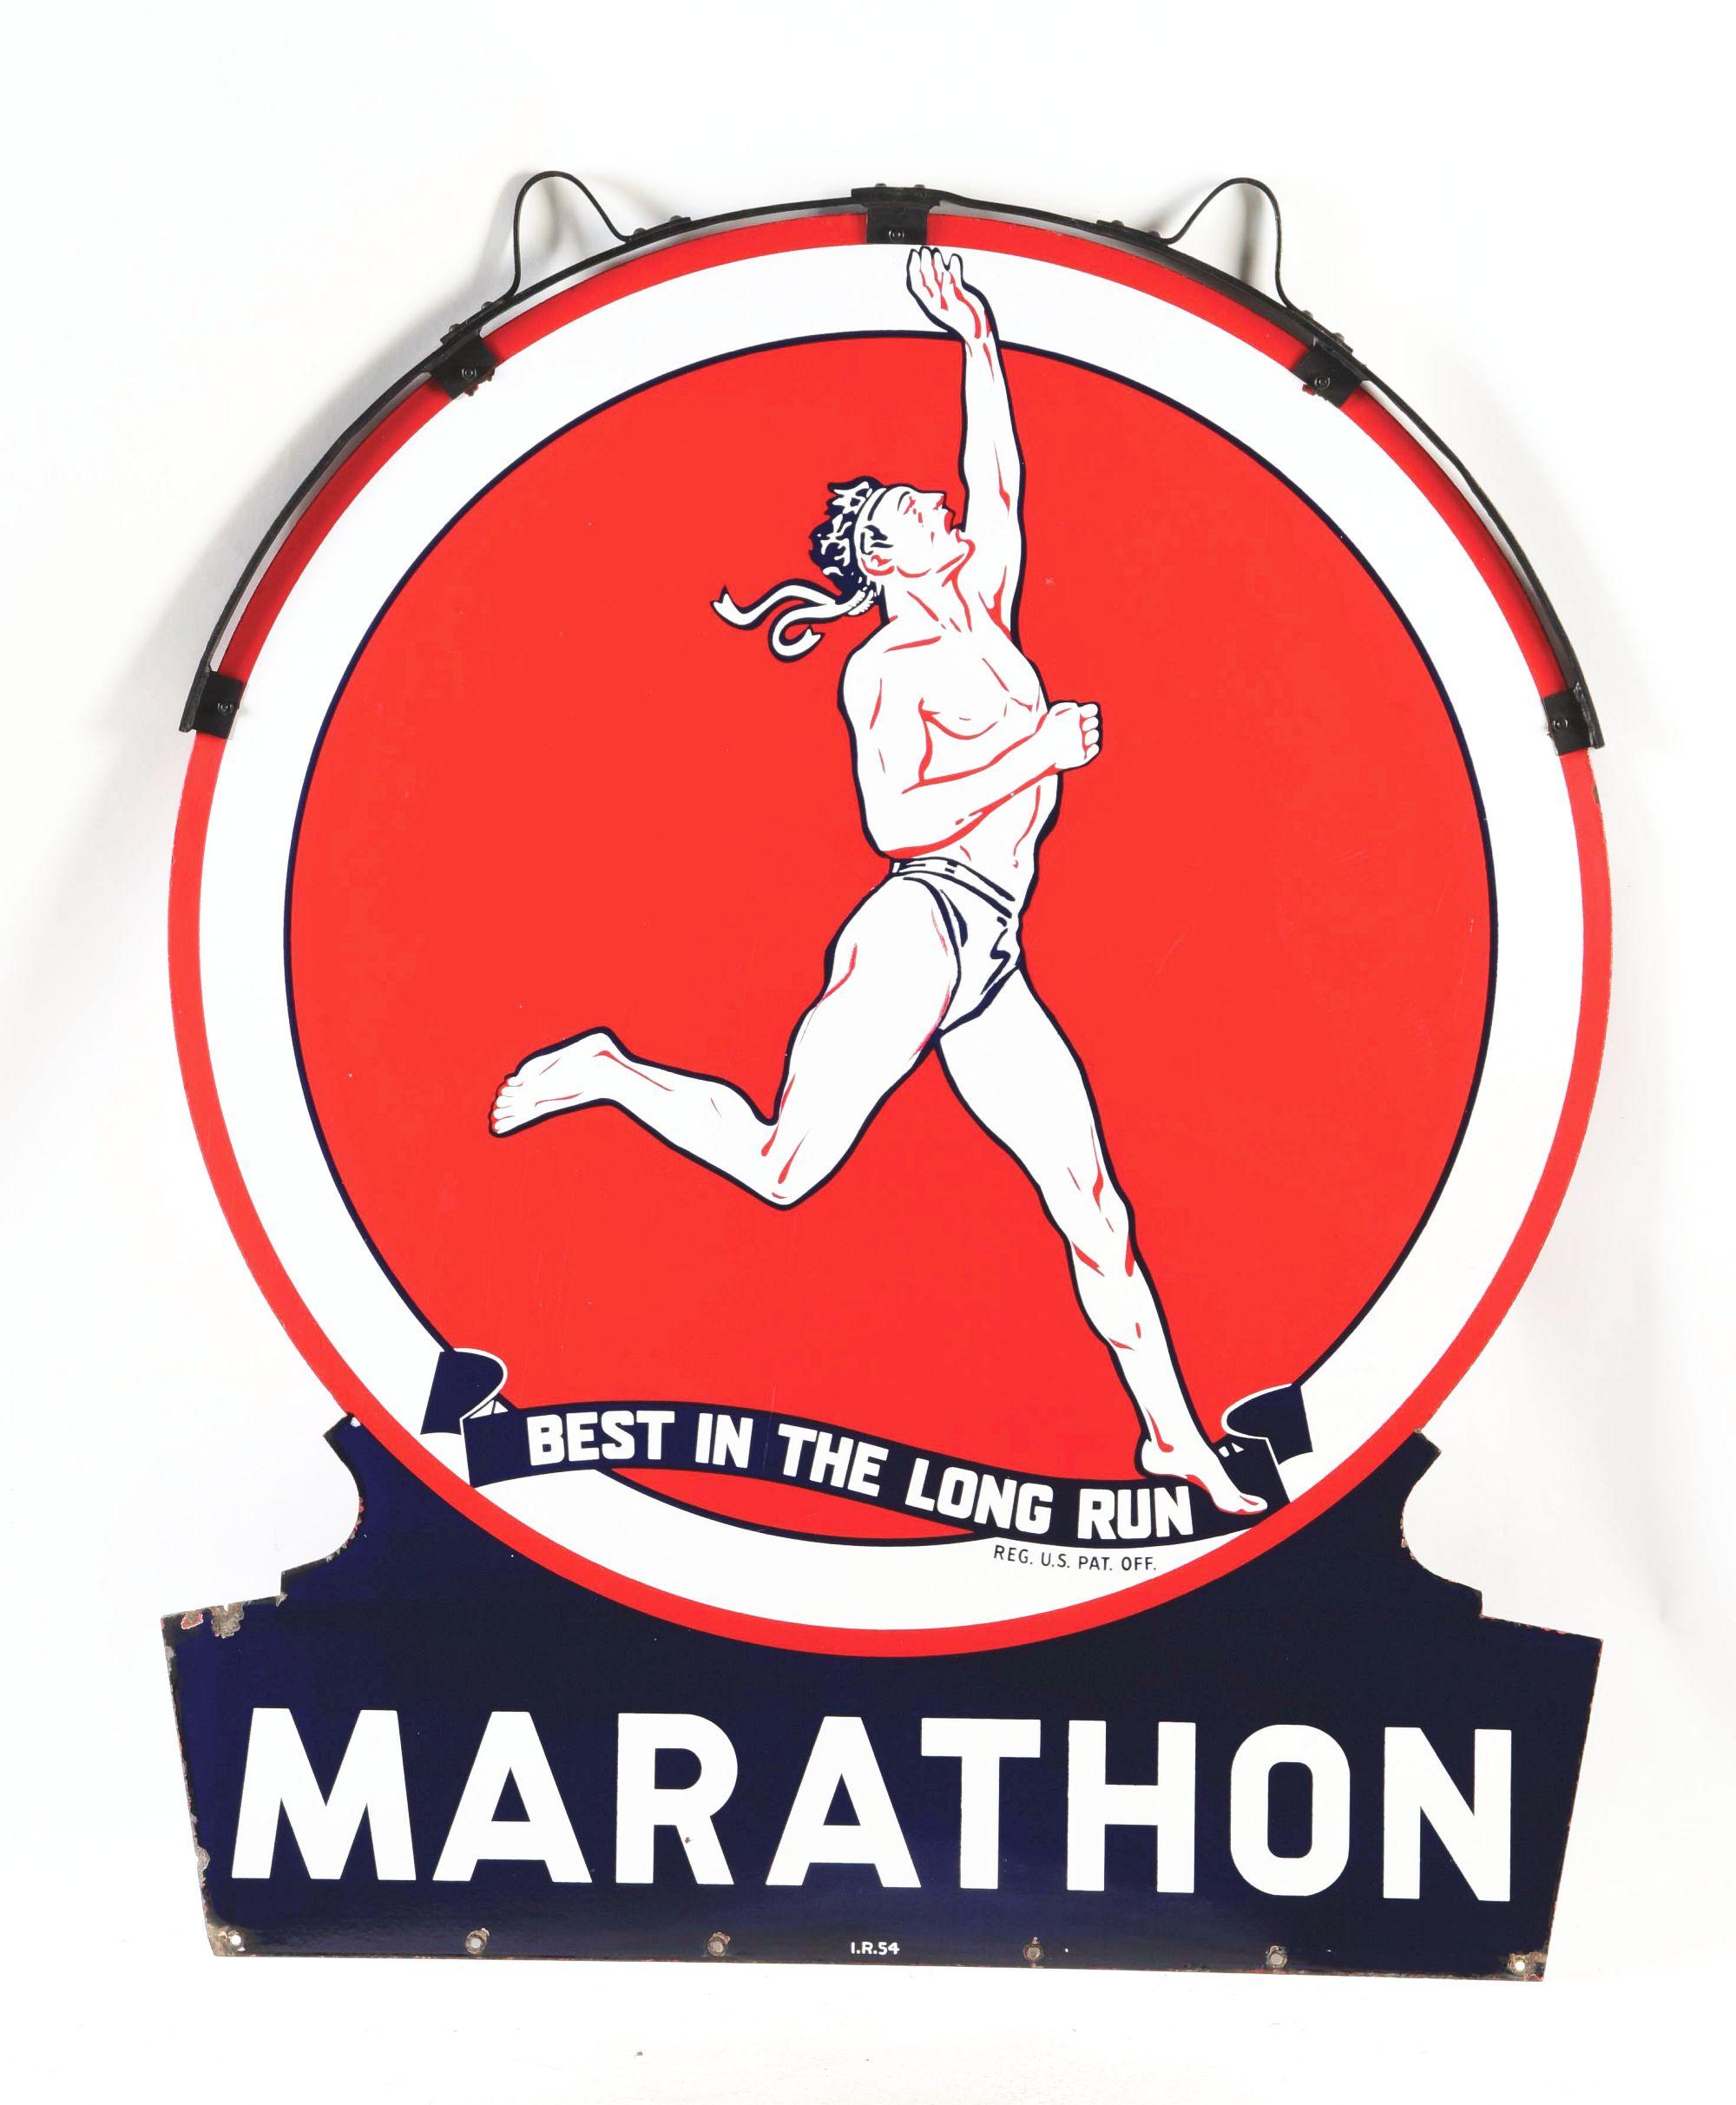 Outstanding Marathon Gasoline Die Cut Porcelain Sign W/ Running Man Graphic.